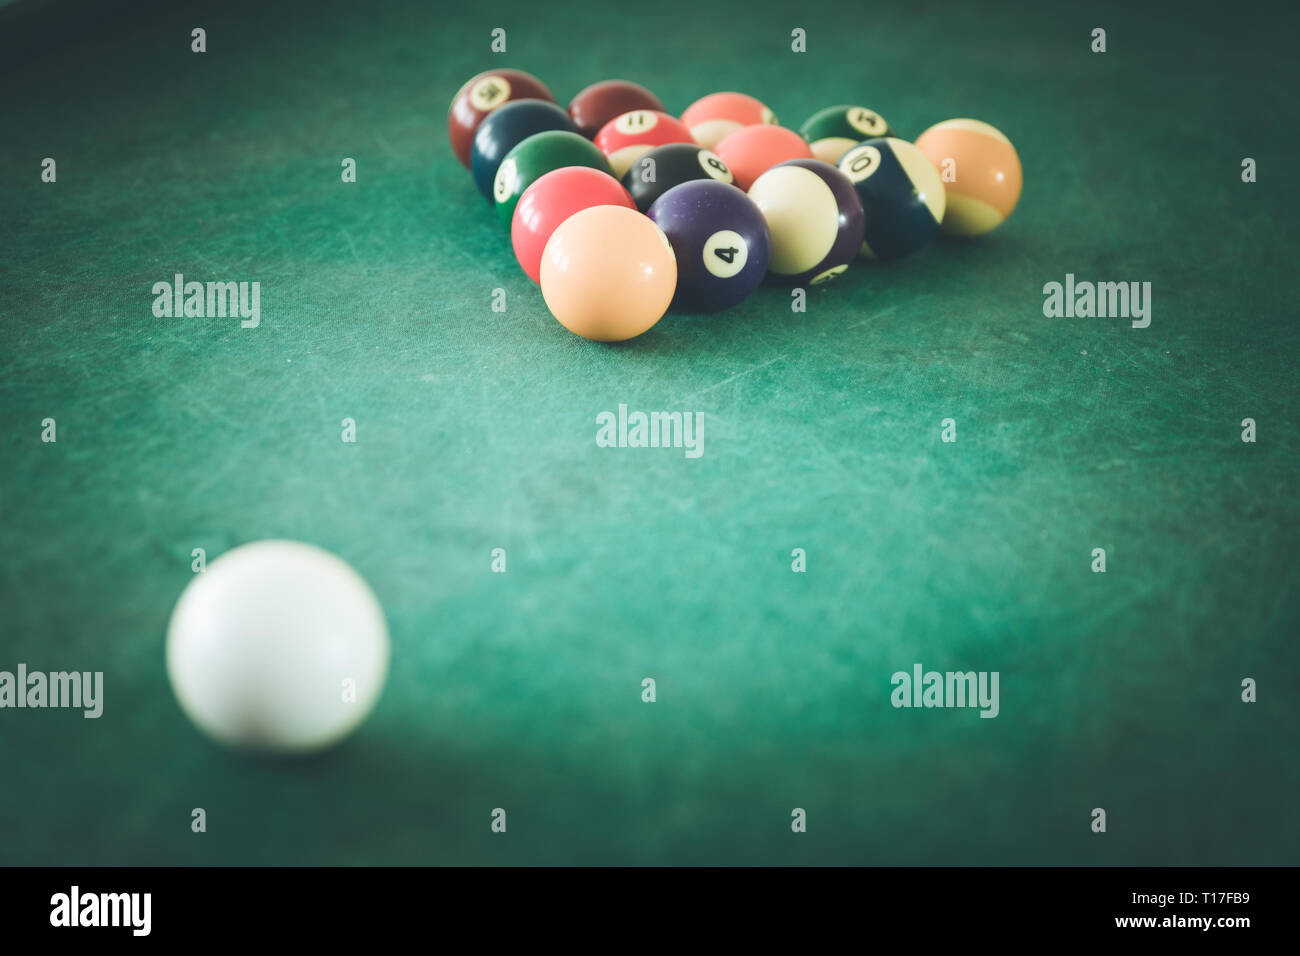 Billard balls and table in a bar Stock Photo - Alamy